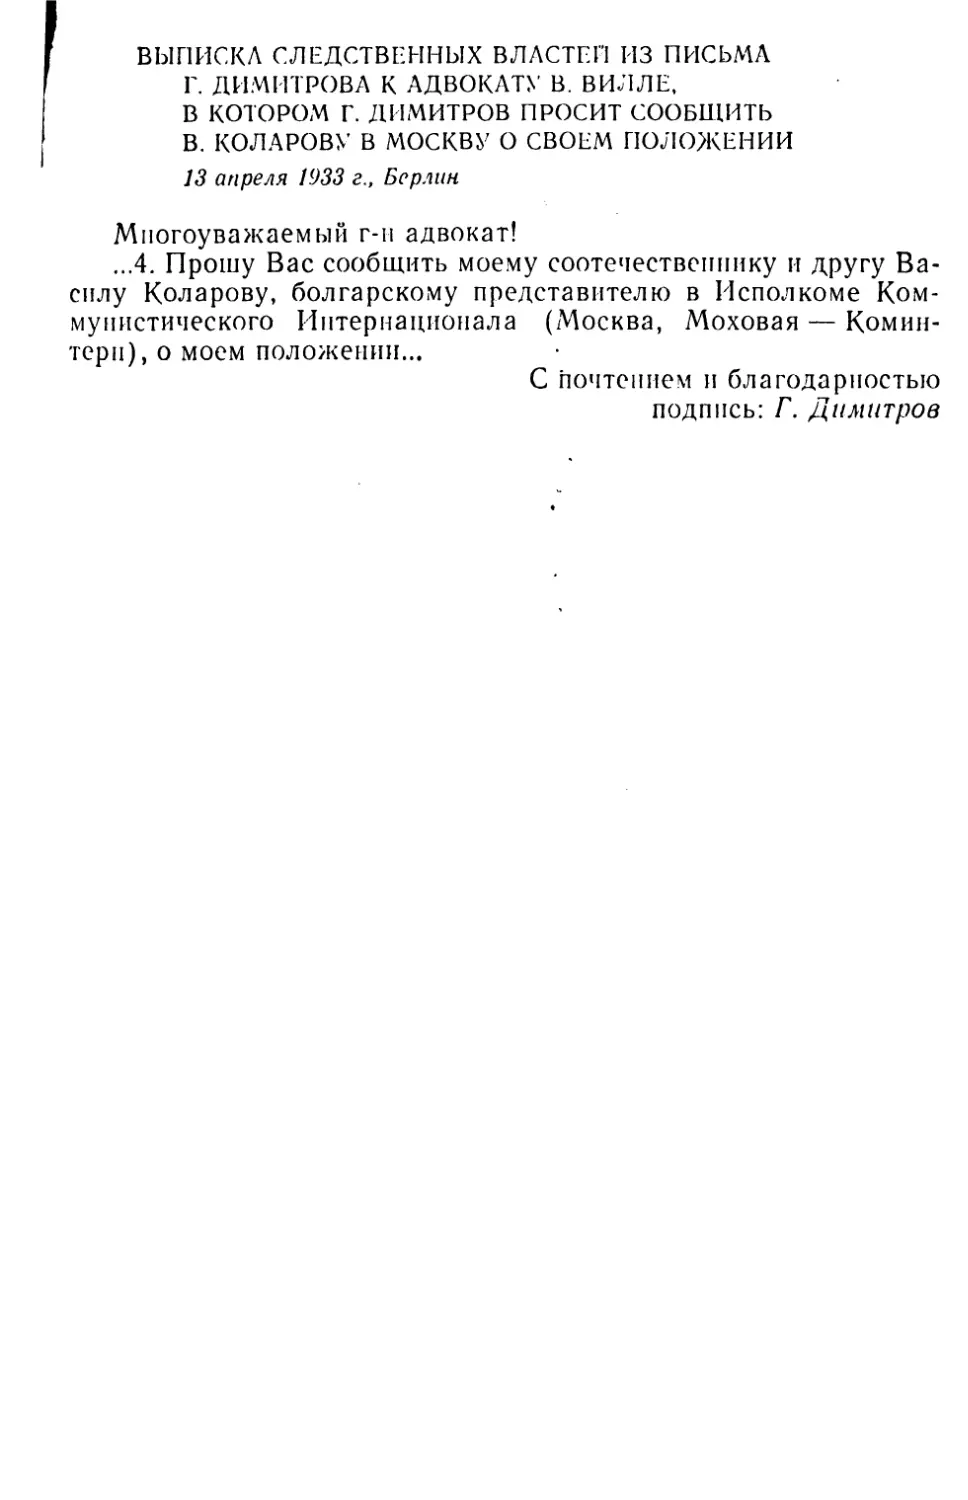 Выписка следственных властей из письма Г. Димитрова к адвокату В. Вилле, в котором Г. Димитров просит сообщить В. Коларову в Москву о своем положении. 13 апреля 1933 г